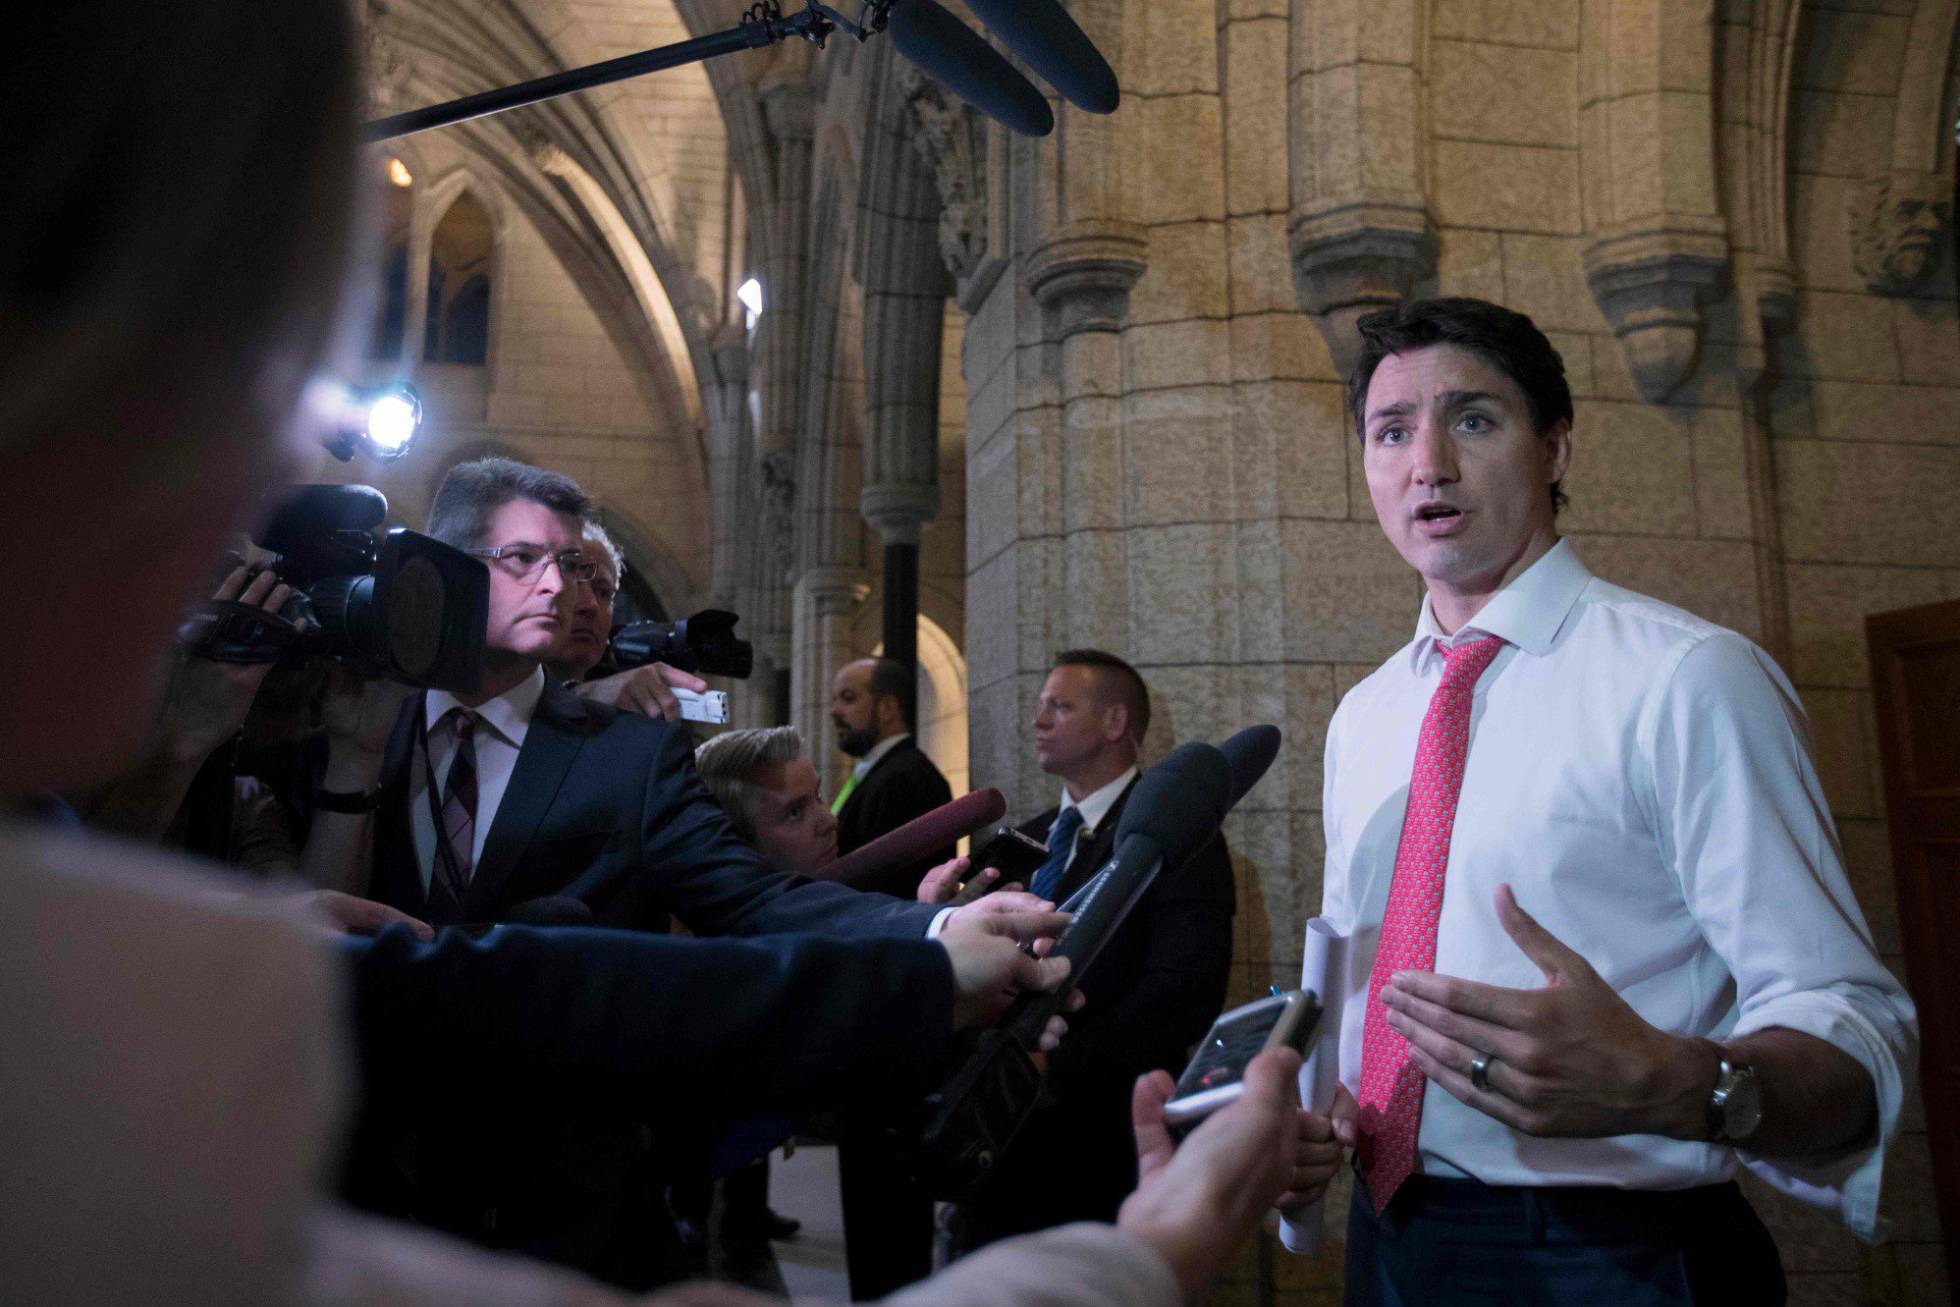 Primer Ministro de Canadá niega haber manoseado a una periodista